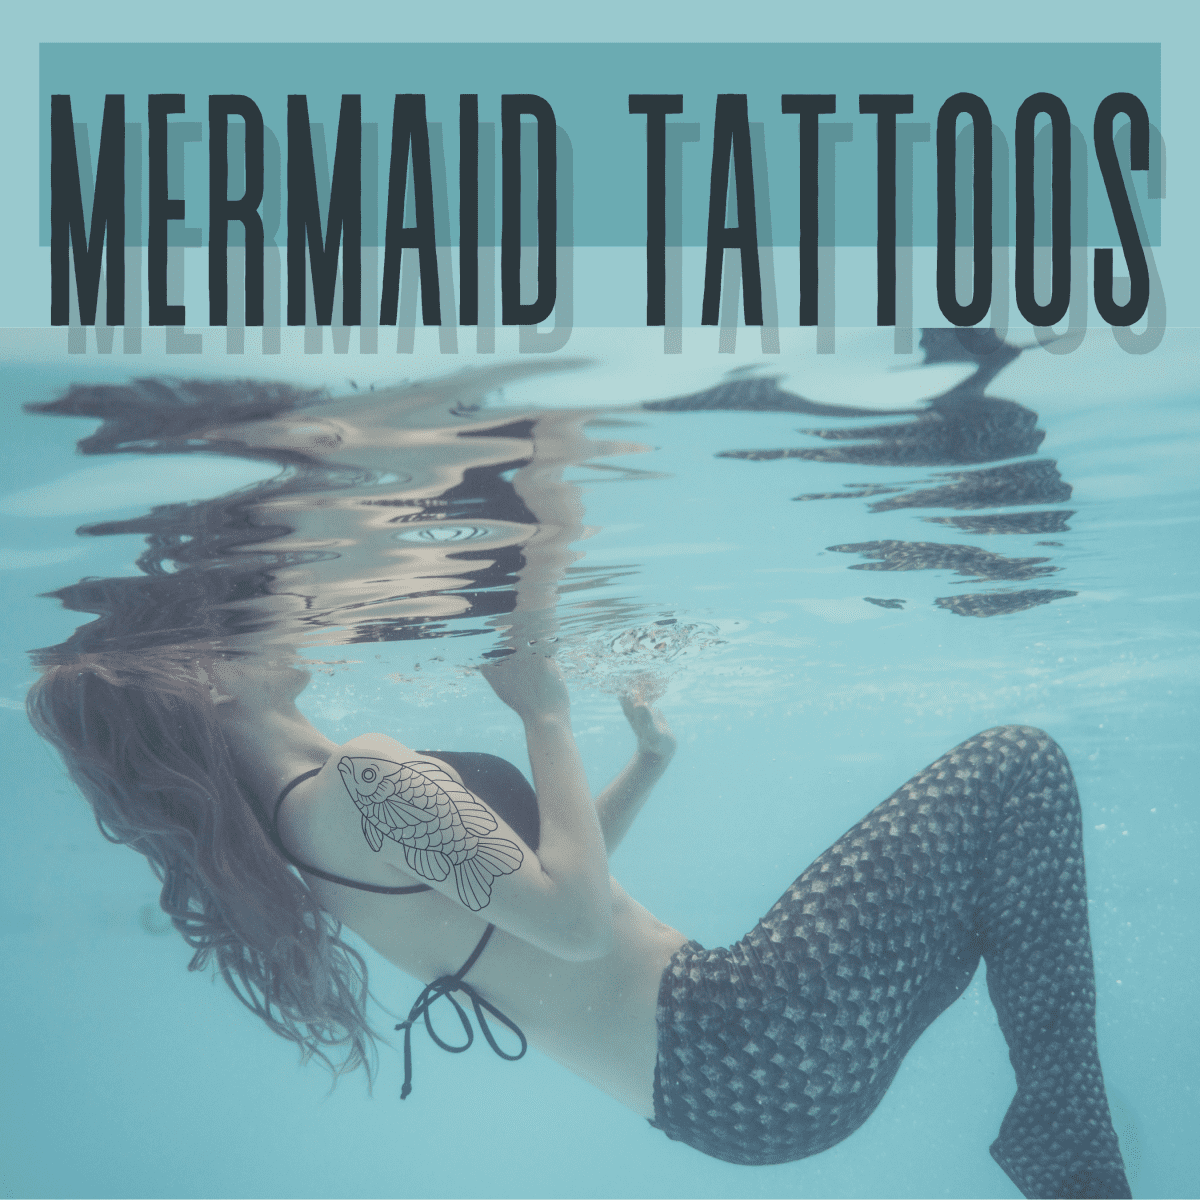 Tattoo uploaded by Vinny Scialabba • Dead mermaid  📩vinnytattoos95@gmail.com / @vinnyscialabba • Tattoodo